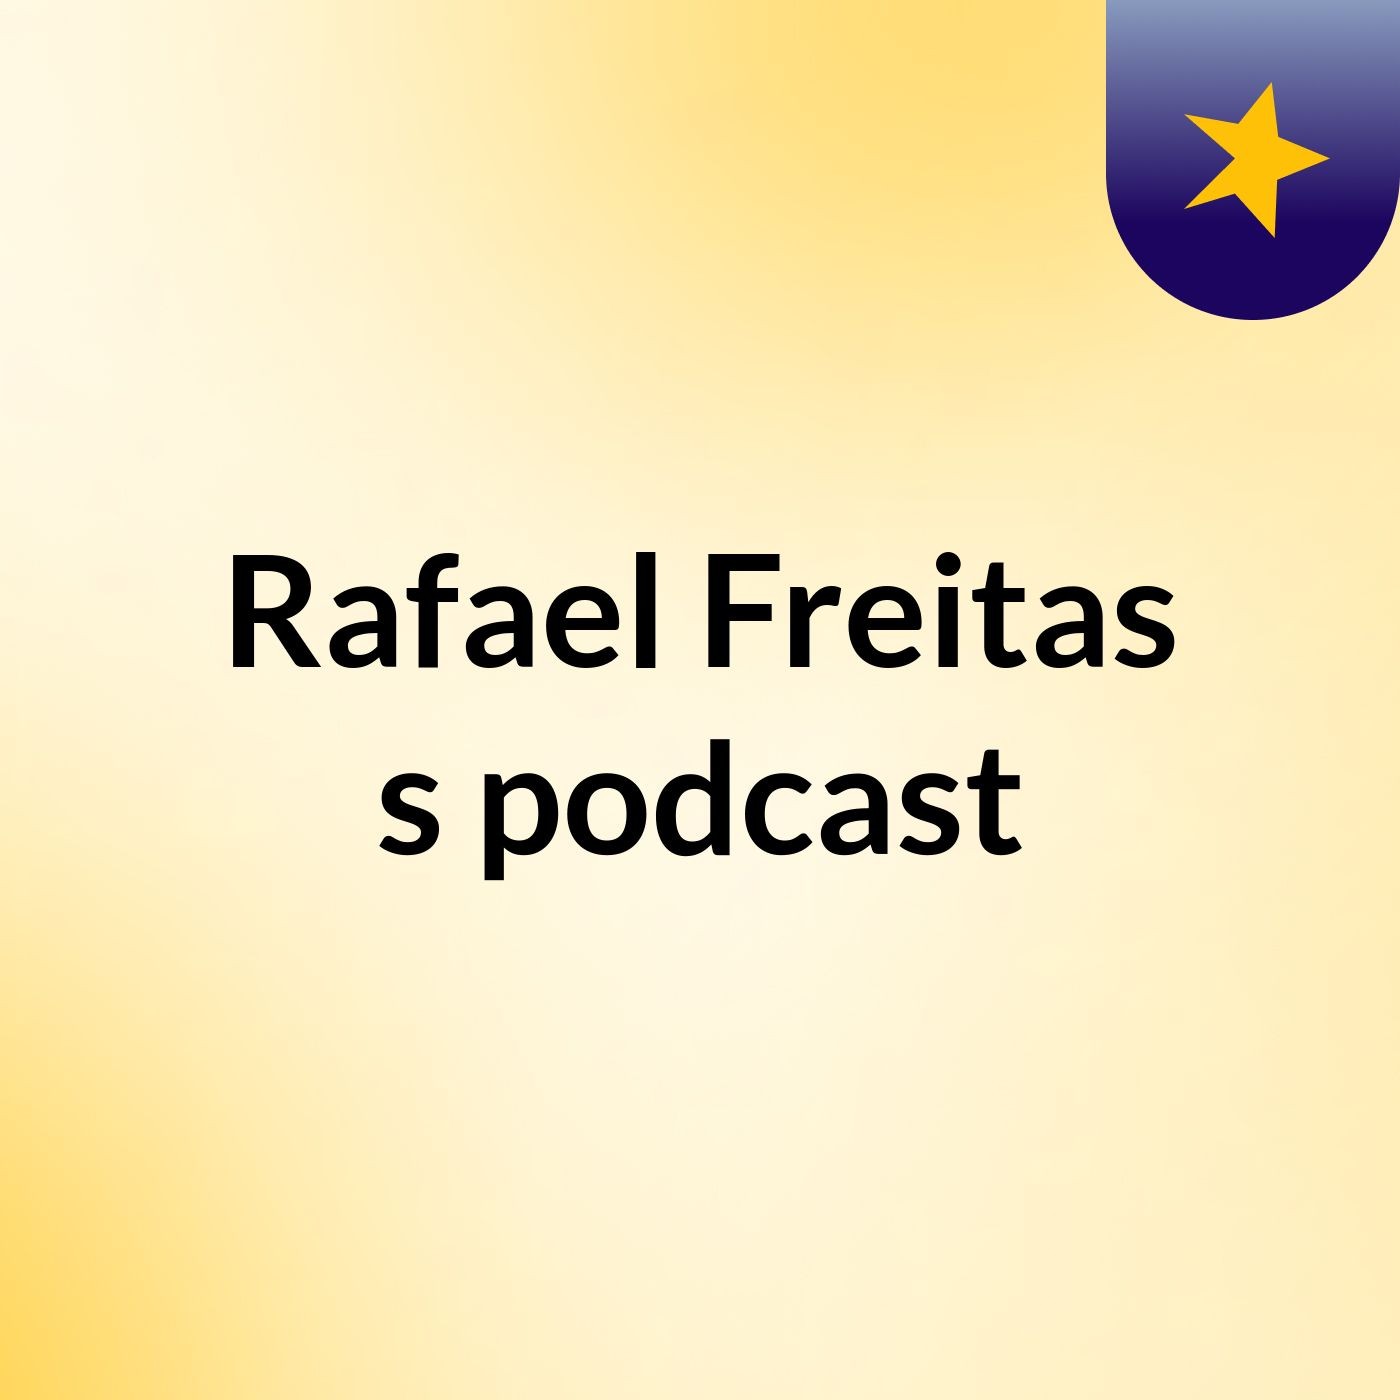 Rafael Freitas's podcast